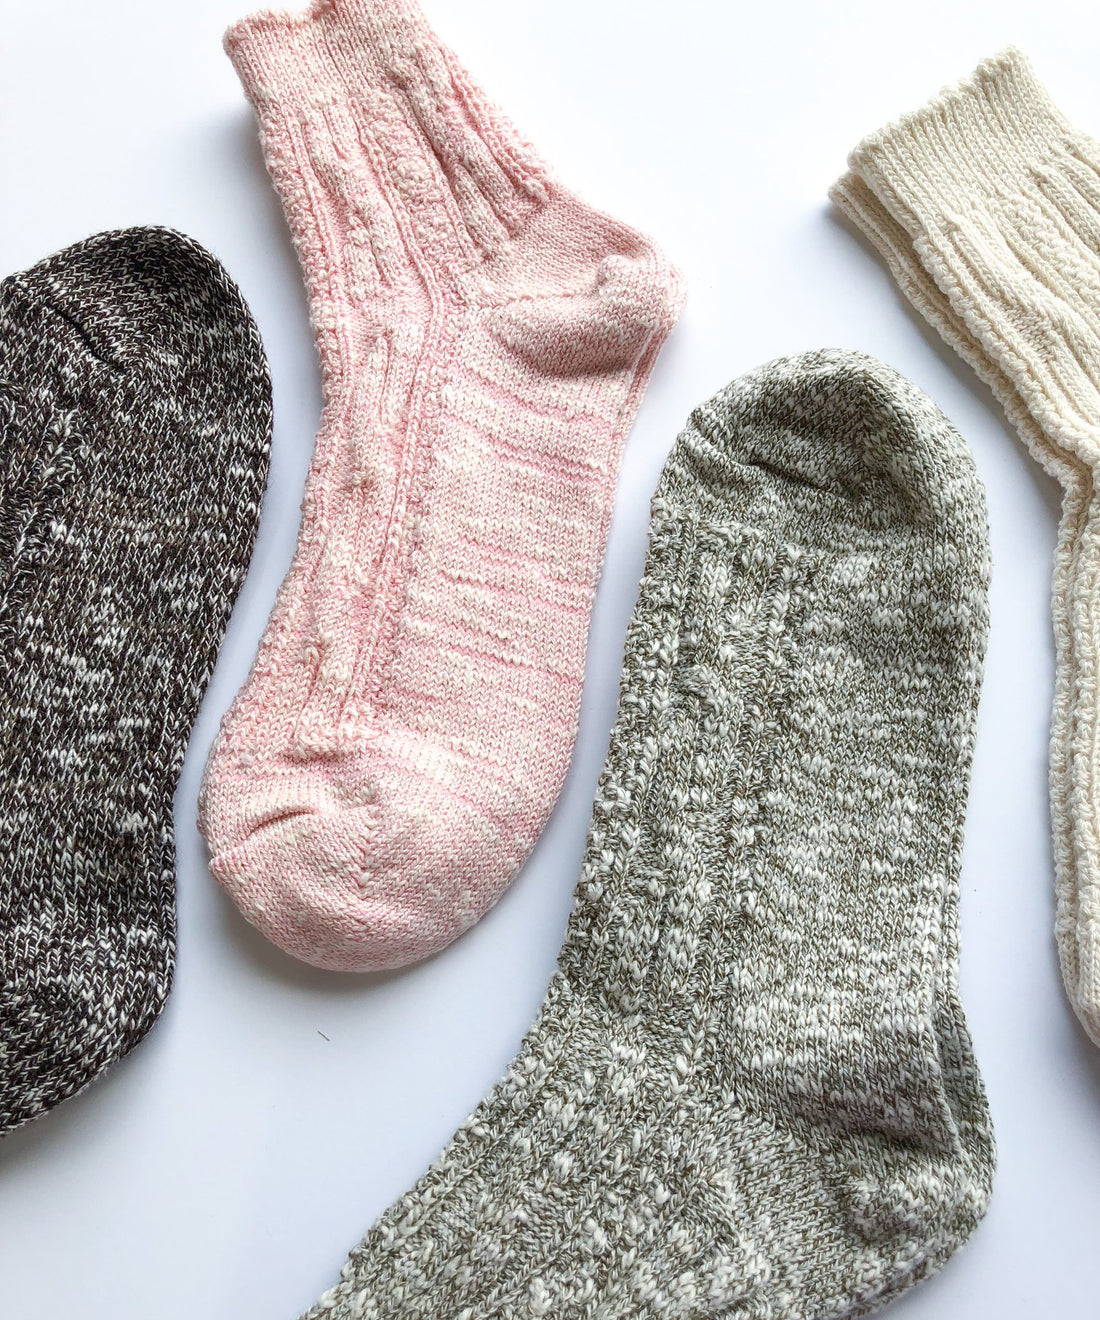 Toeless socks business booming for B.C. girl